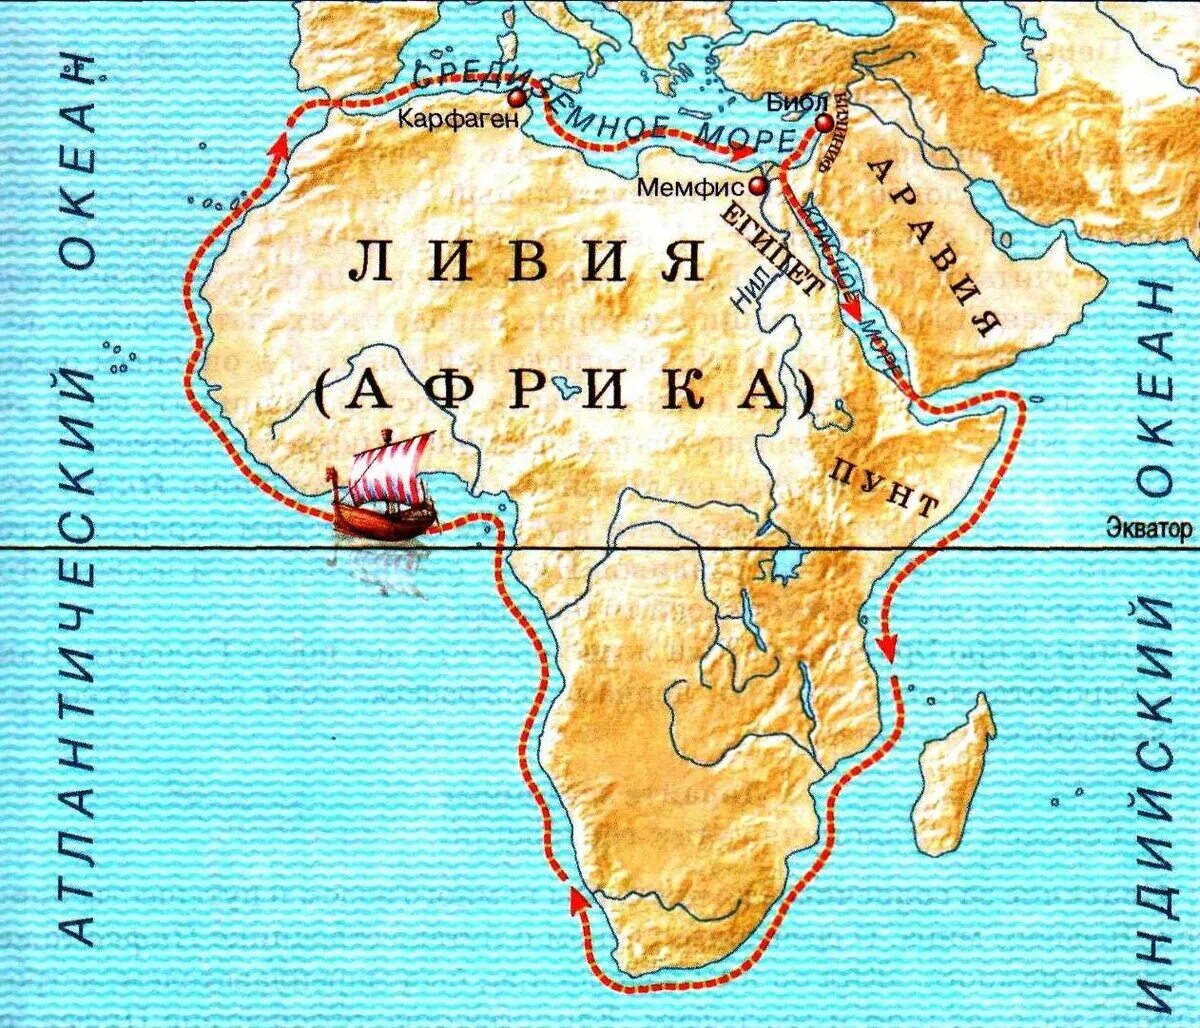 Первый морское путешествие вокруг африки. Плавание финикийцев вокруг Африки маршрут. Плавание финикийцев вокруг Африки из Египта. Путь плавания финикийцев. Первое путешествие вокруг Африки совершили финикийцы.